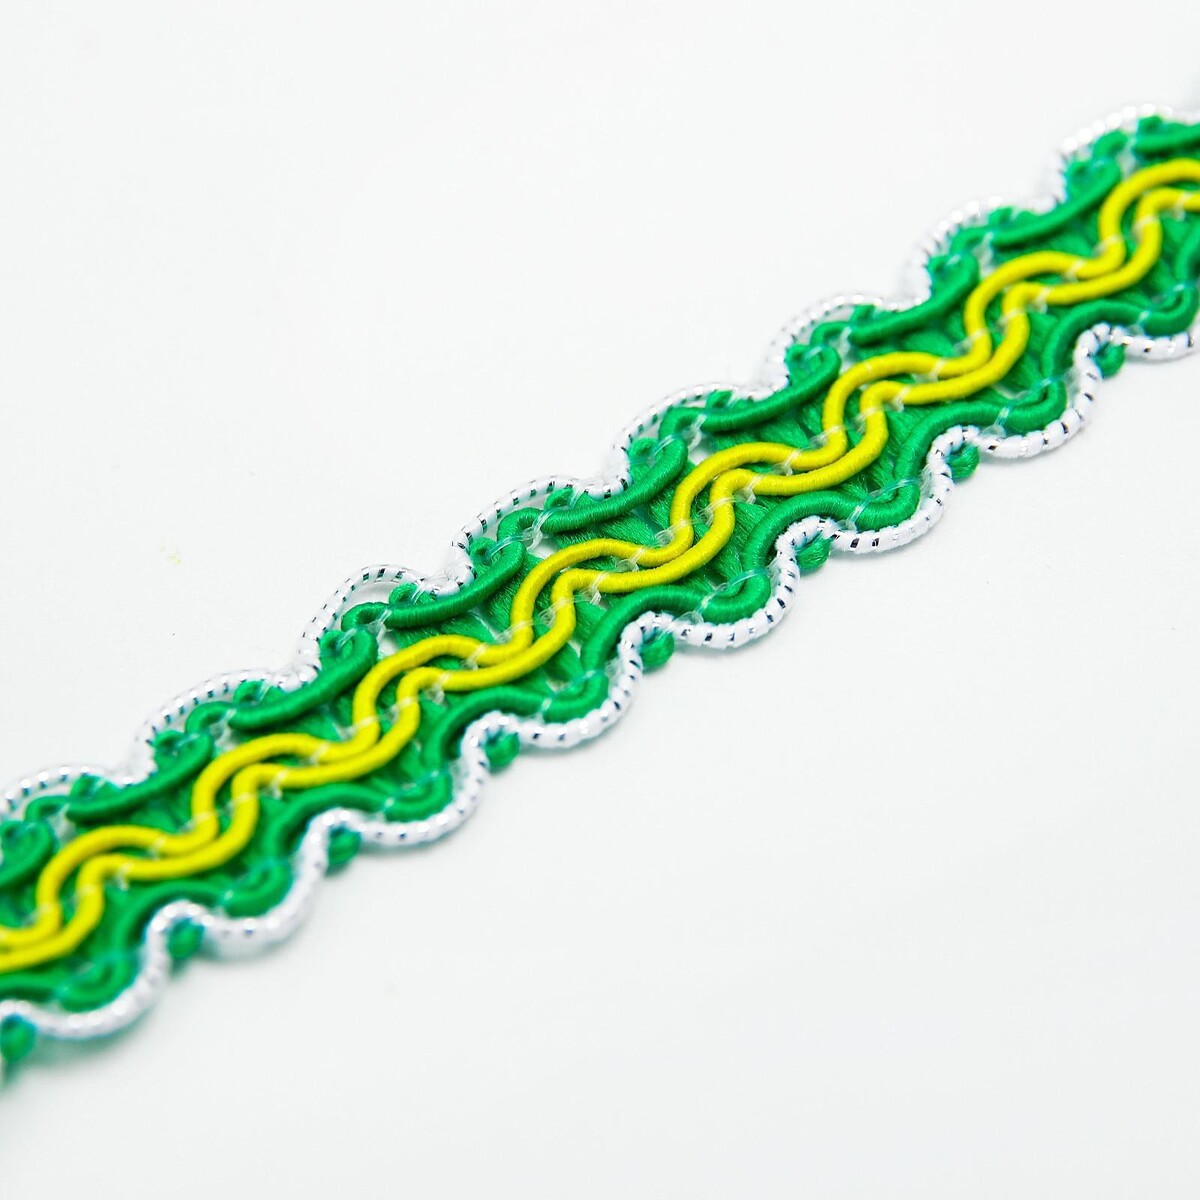 Тесьма бело-зелено-желтая, ширина 1,2 см, в упаковке 50 м расческа для шерсти 15 6 х 3 6 см короткие зубья 1 7 см зелено желтая